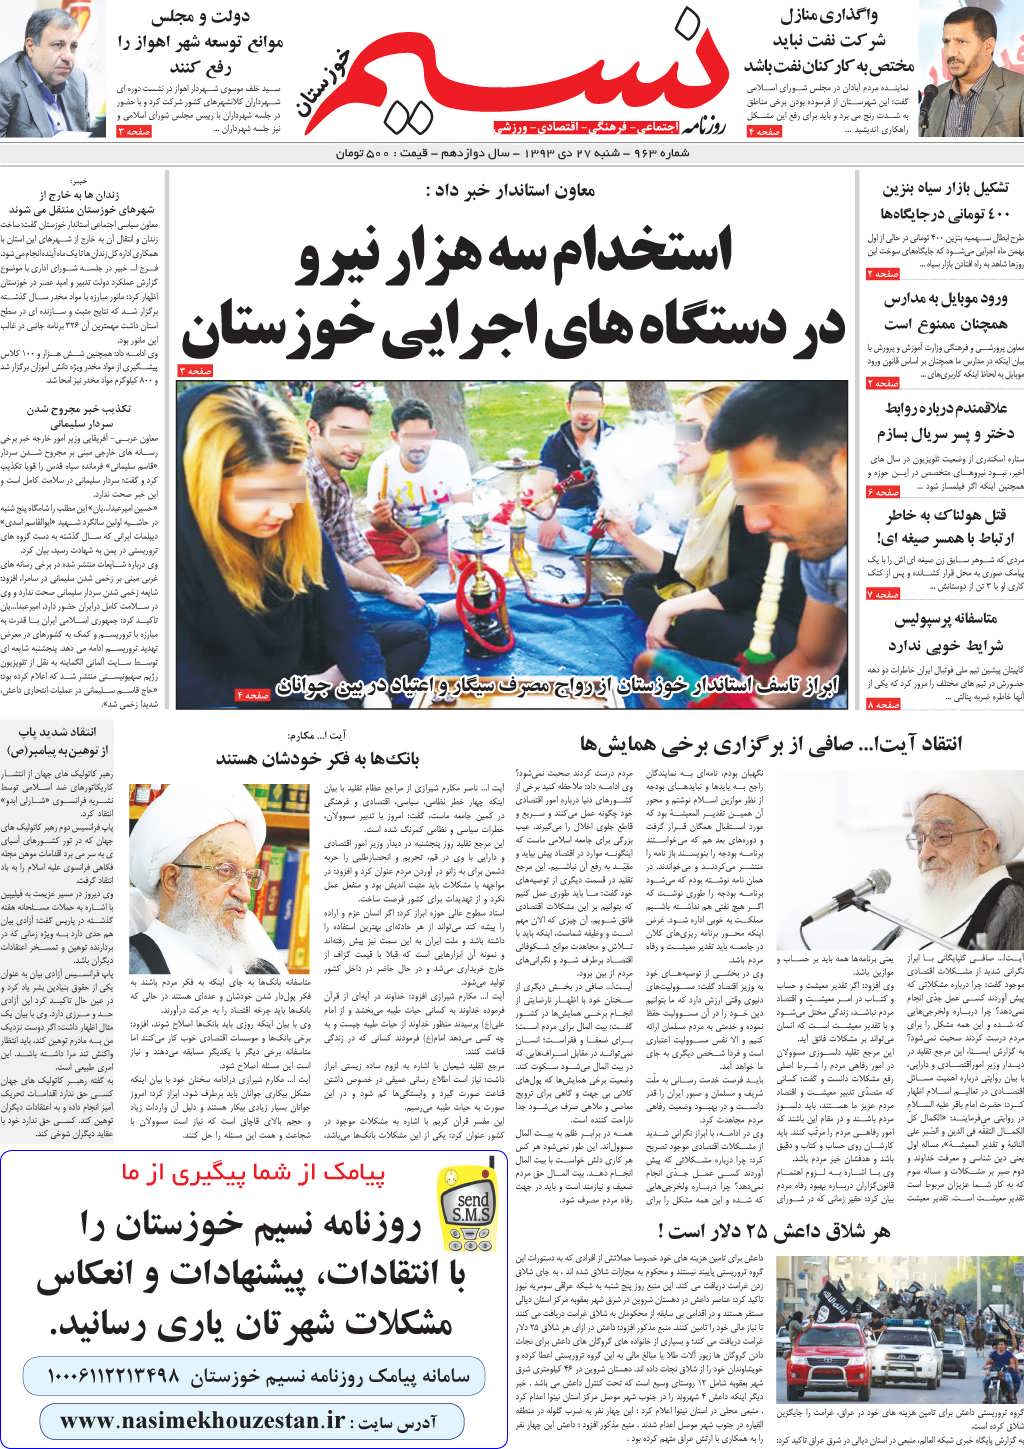 صفحه اصلی روزنامه نسیم شماره 963 